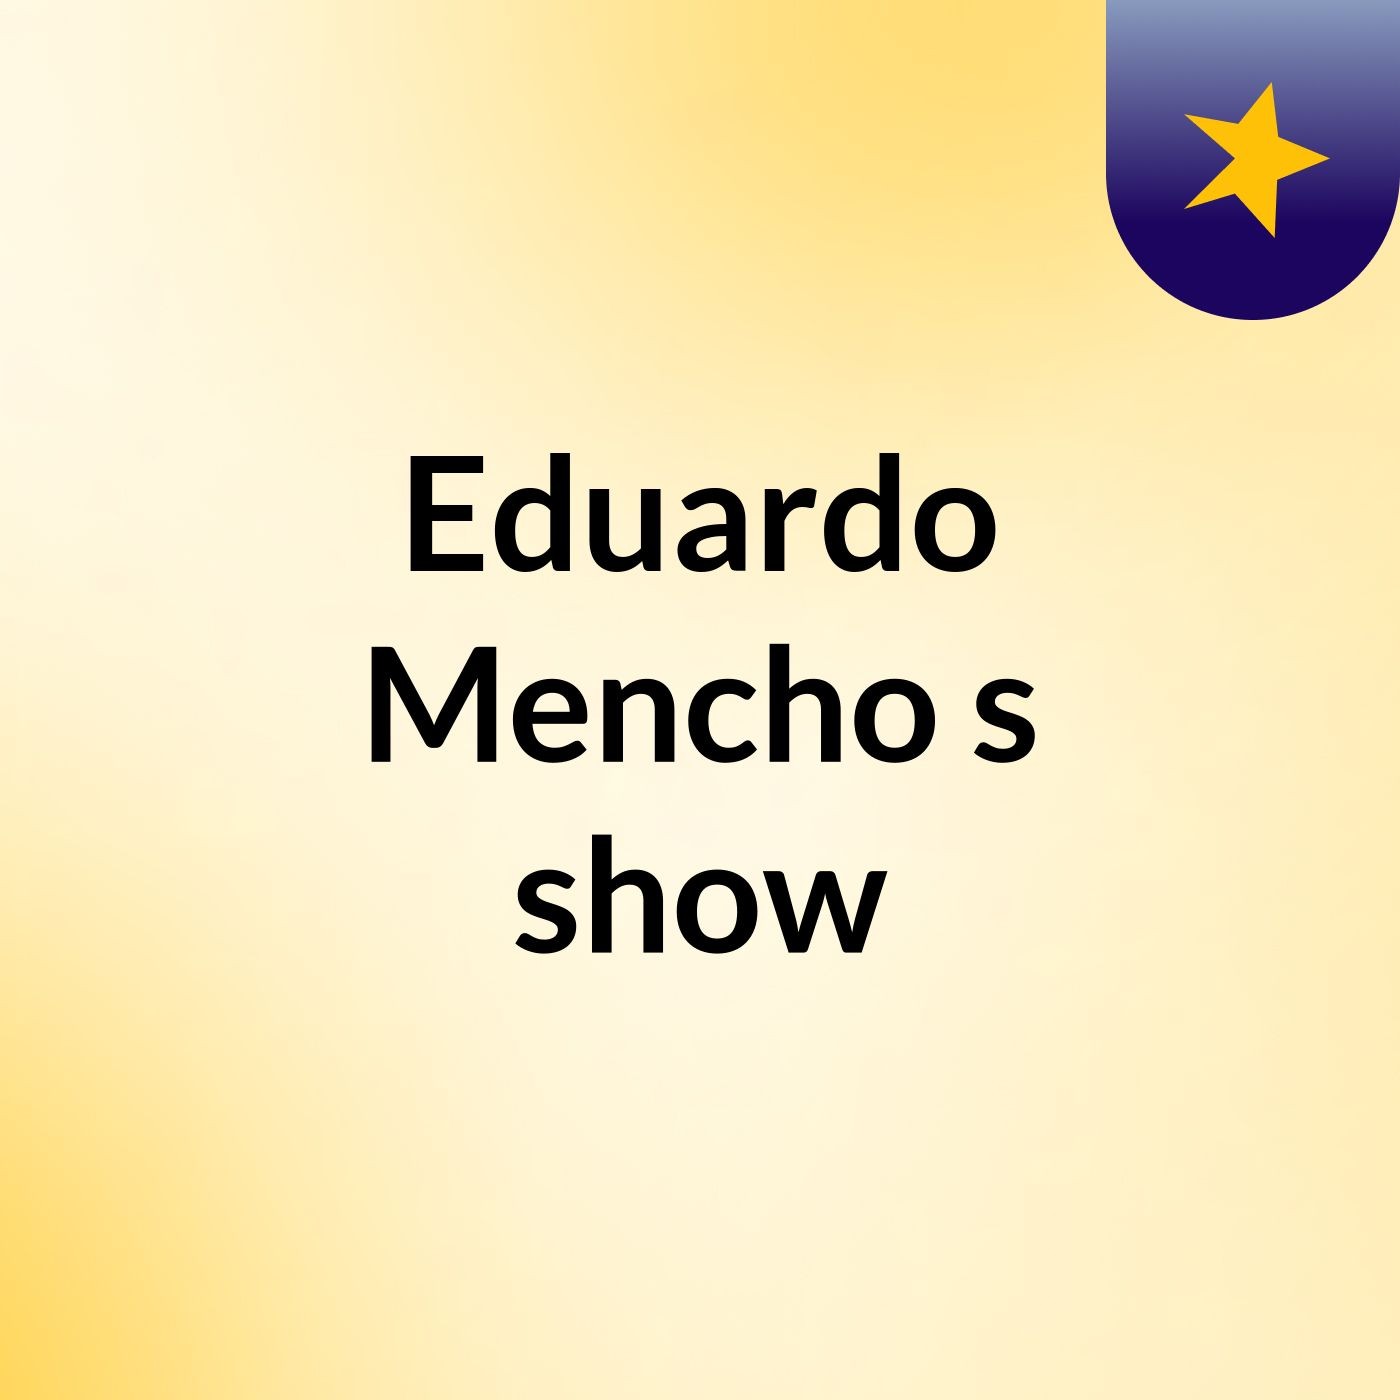 Eduardo Mencho's show